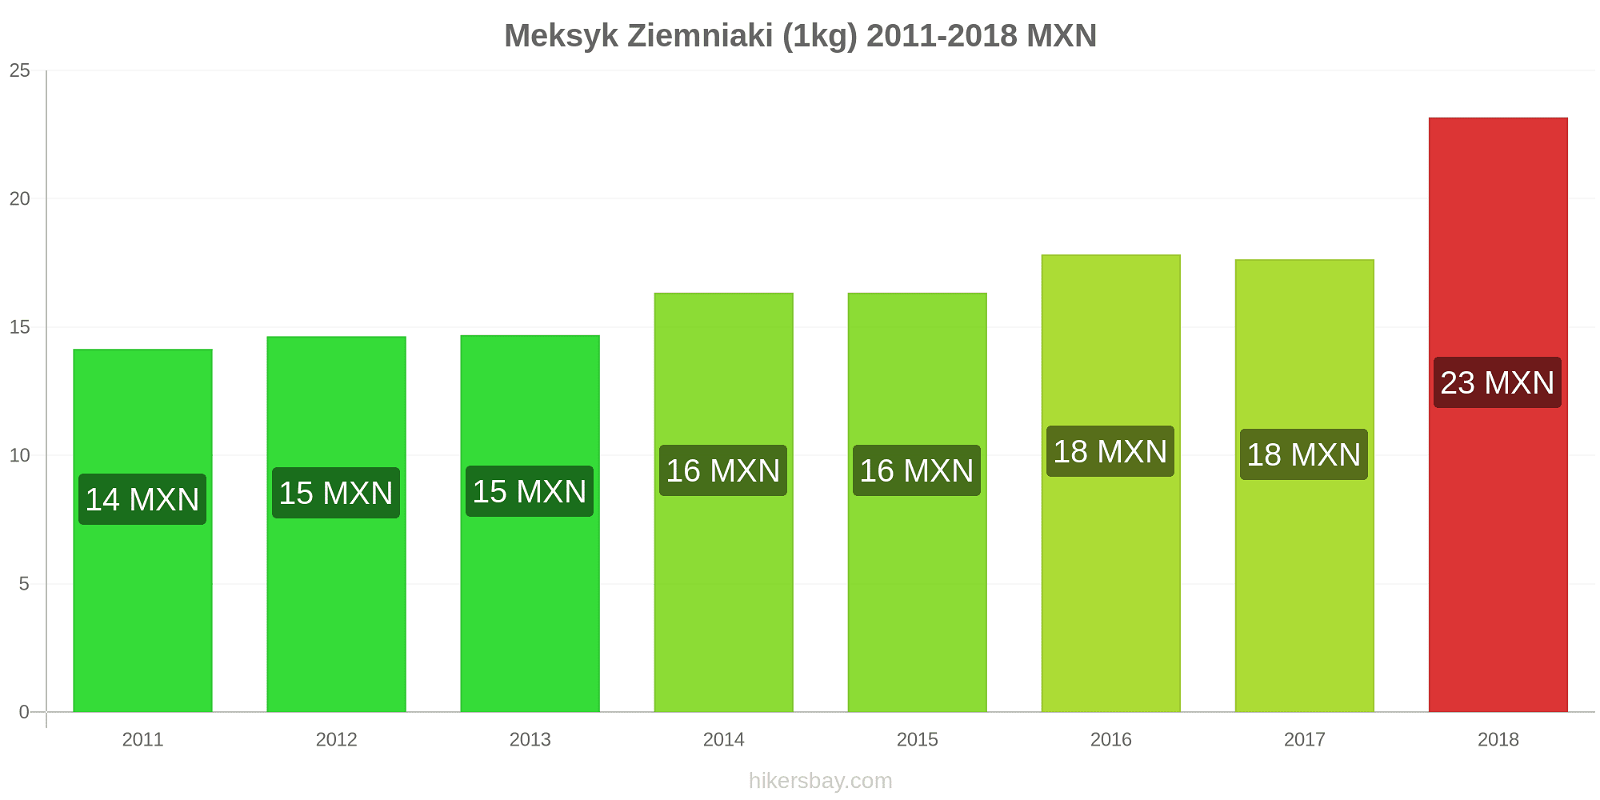 Meksyk zmiany cen Ziemniaki (1kg) hikersbay.com